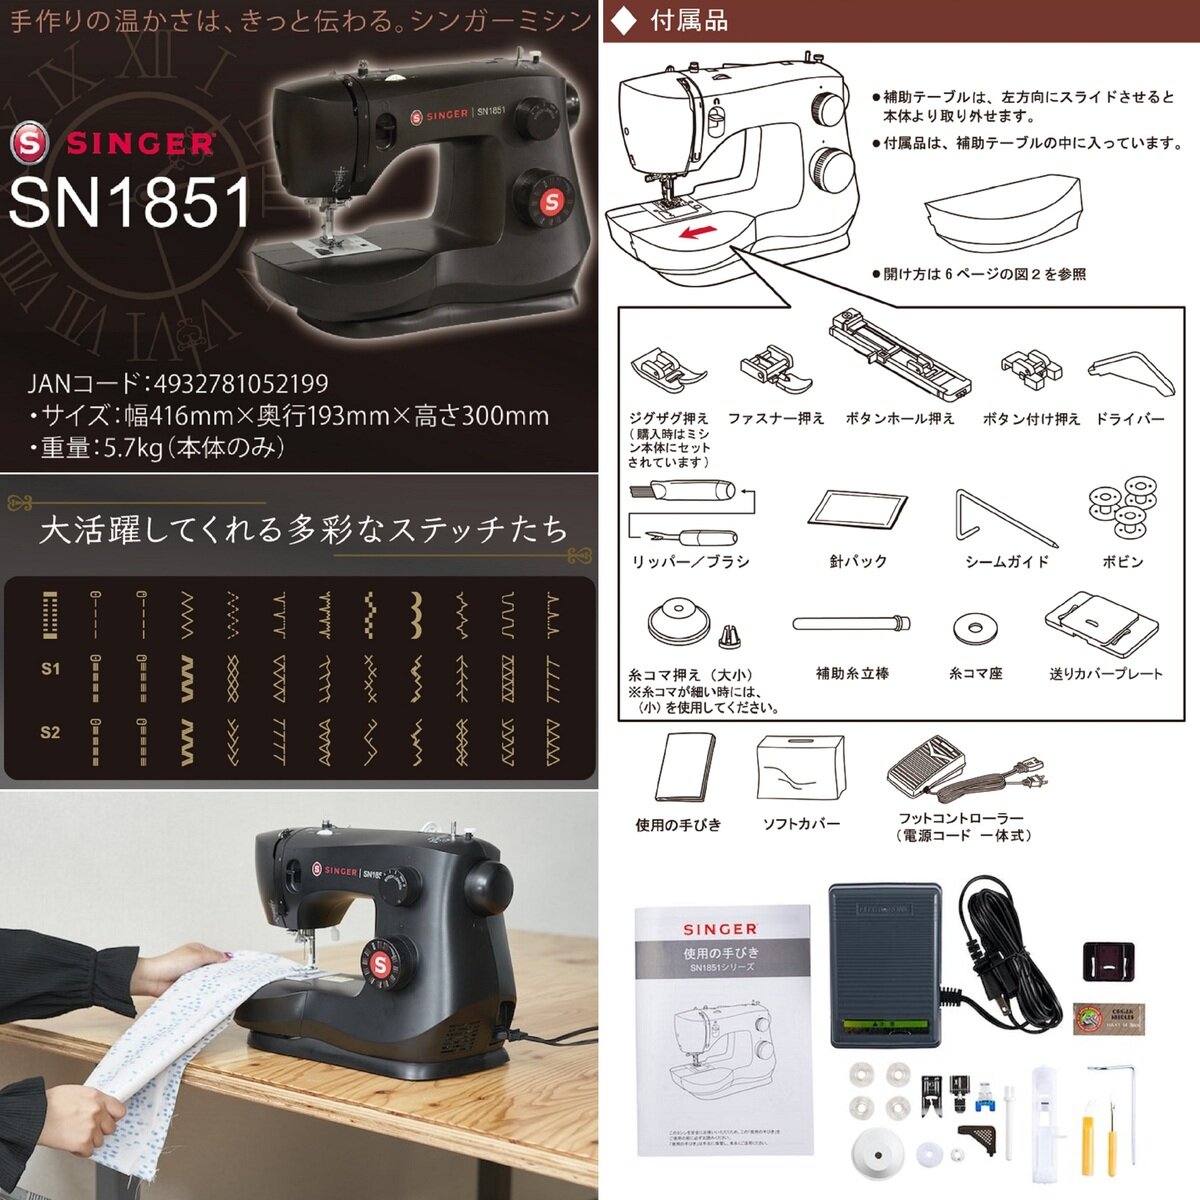 シンガー フットコントローラー電動ミシン SN1851 | Costco Japan